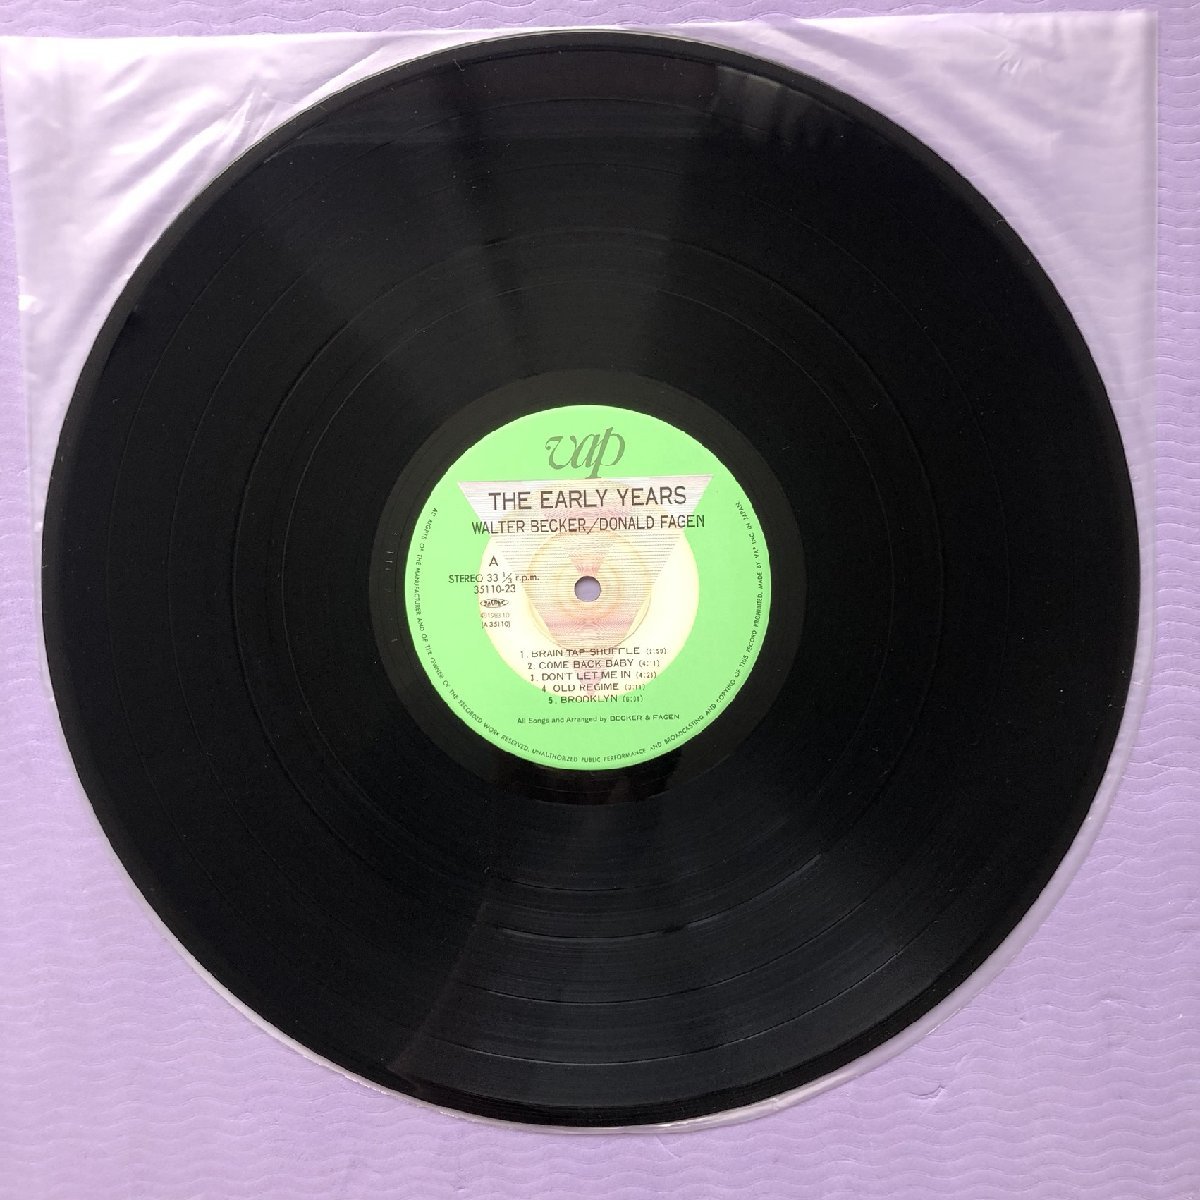 傷なし美盤 美ジャケ 超貴重盤 Walter Becker & Donald Fagen (Steely Dan) 1983年 LPレコード The Early Years 国内盤 帯付_画像8